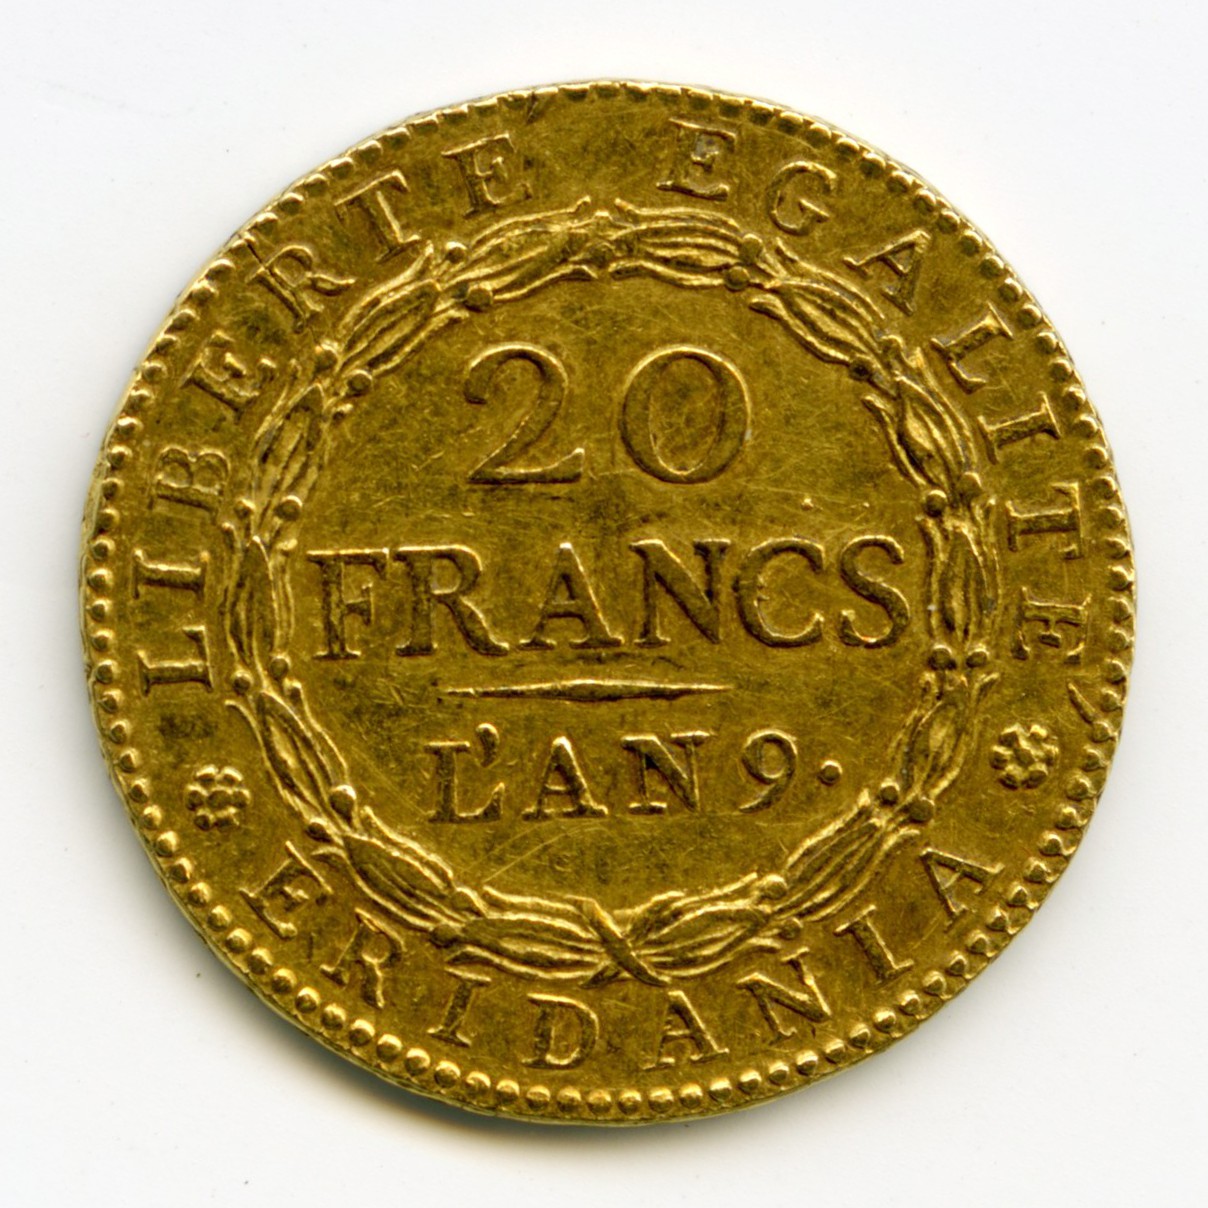 Italie - 20 Francs Marengo - L'An 9 revers